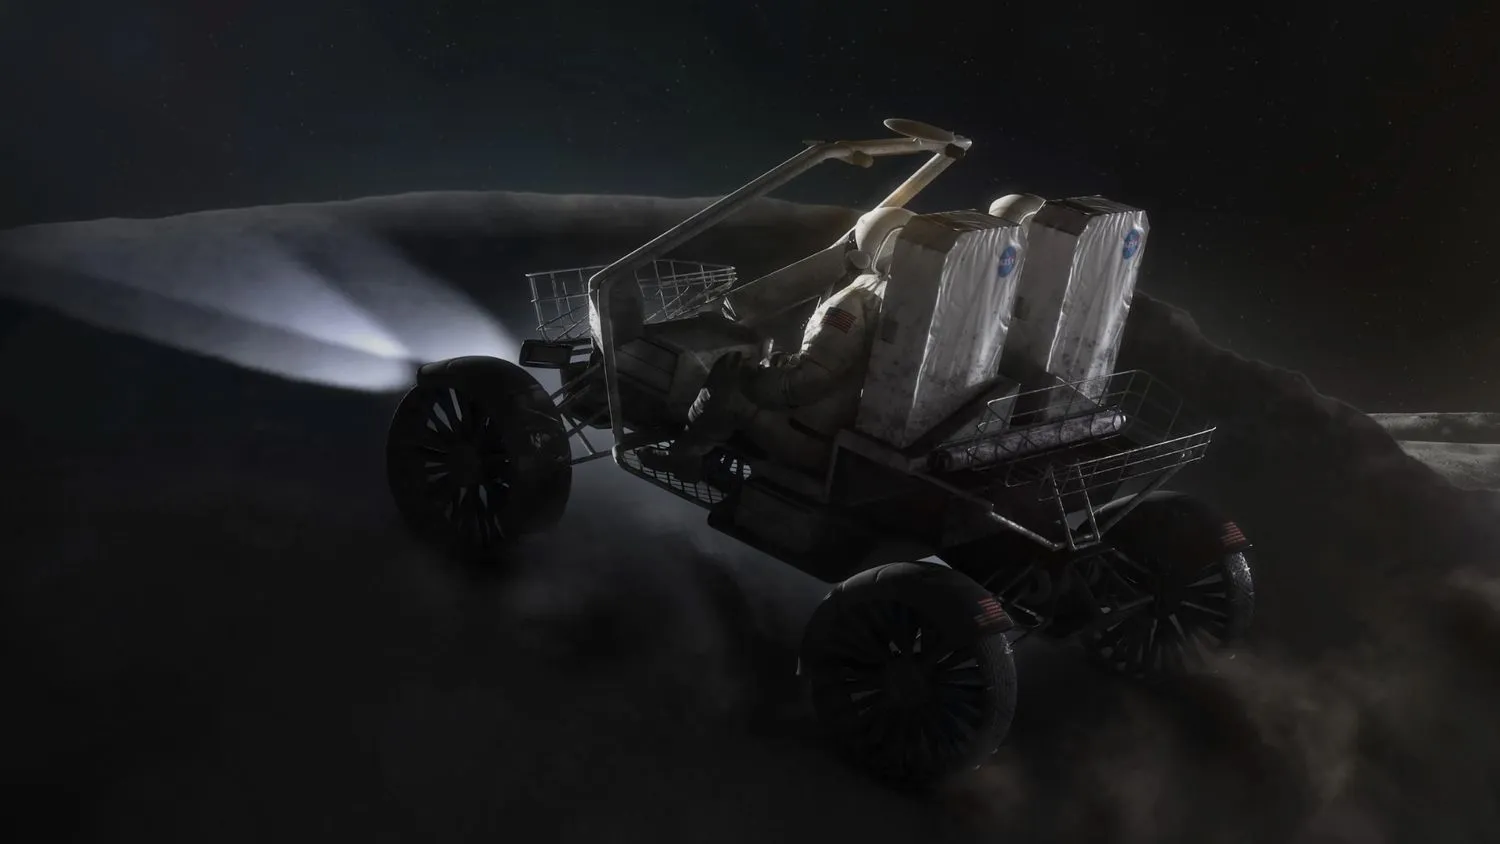 Mehr über den Artikel erfahren Sehen Sie, wie die NASA heute das neue Mondauto für die Artemis-Astronauten auswählt